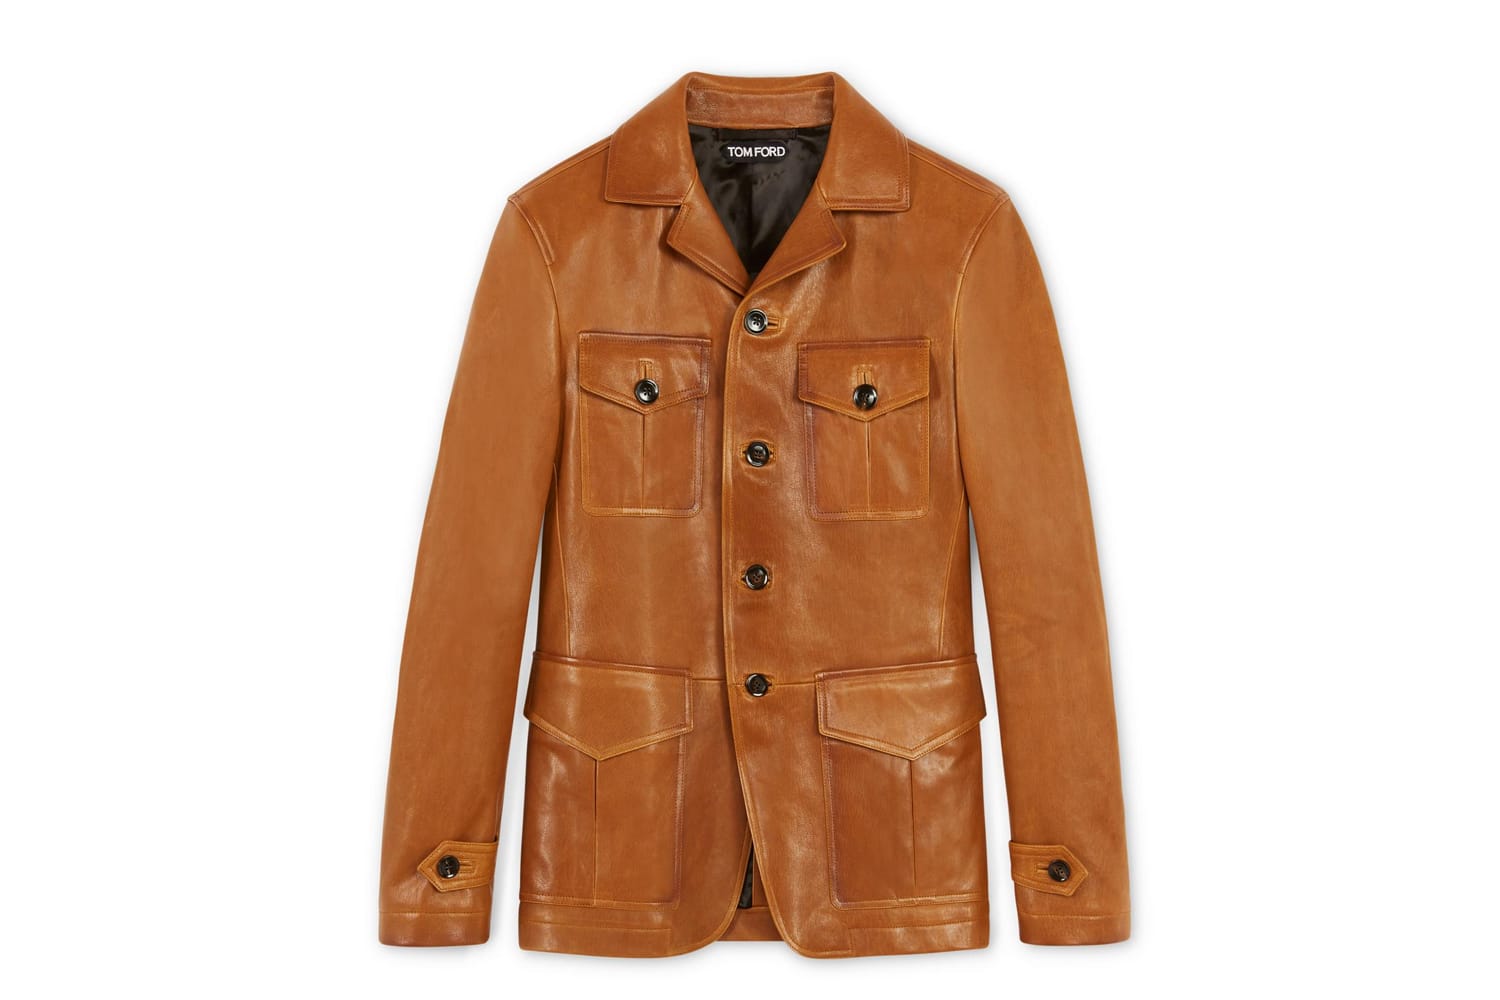 Ein paar Nuancen wärmer, weiches Nappaleder und im Military Stil: Die Lederjacke von Tom Ford besticht durch sommerlich warmes Braun (um 5.000 Euro).